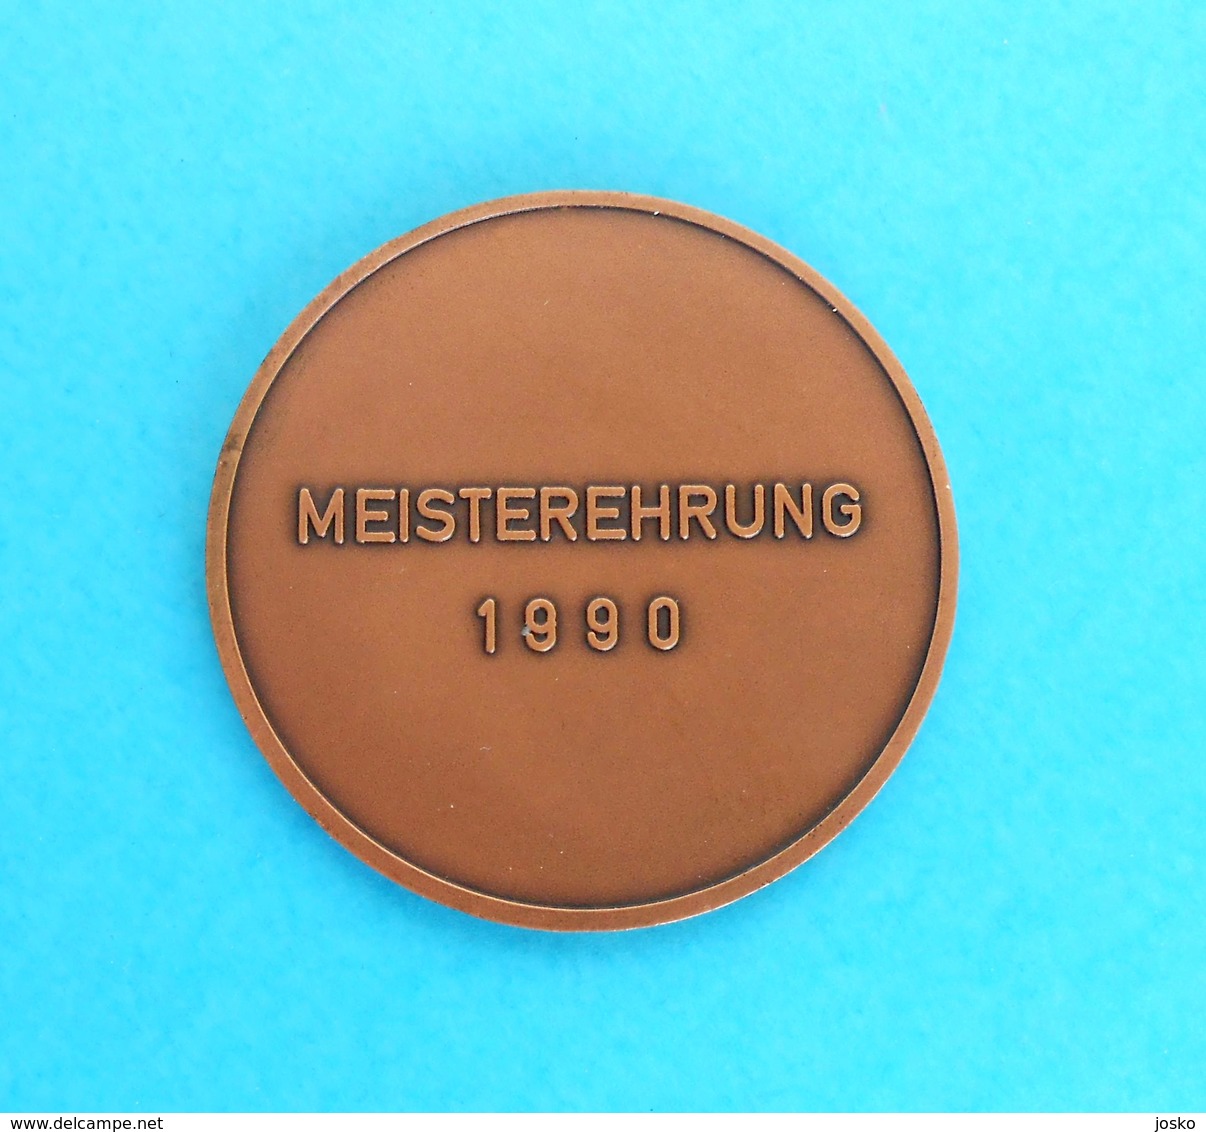 ARCHERY & SHOOTING Germany Medal Württembergischer Schützenverband 1850 EV Stuttgart, Deutschland * Tir à L'arc Tournage - Tir à L'Arc